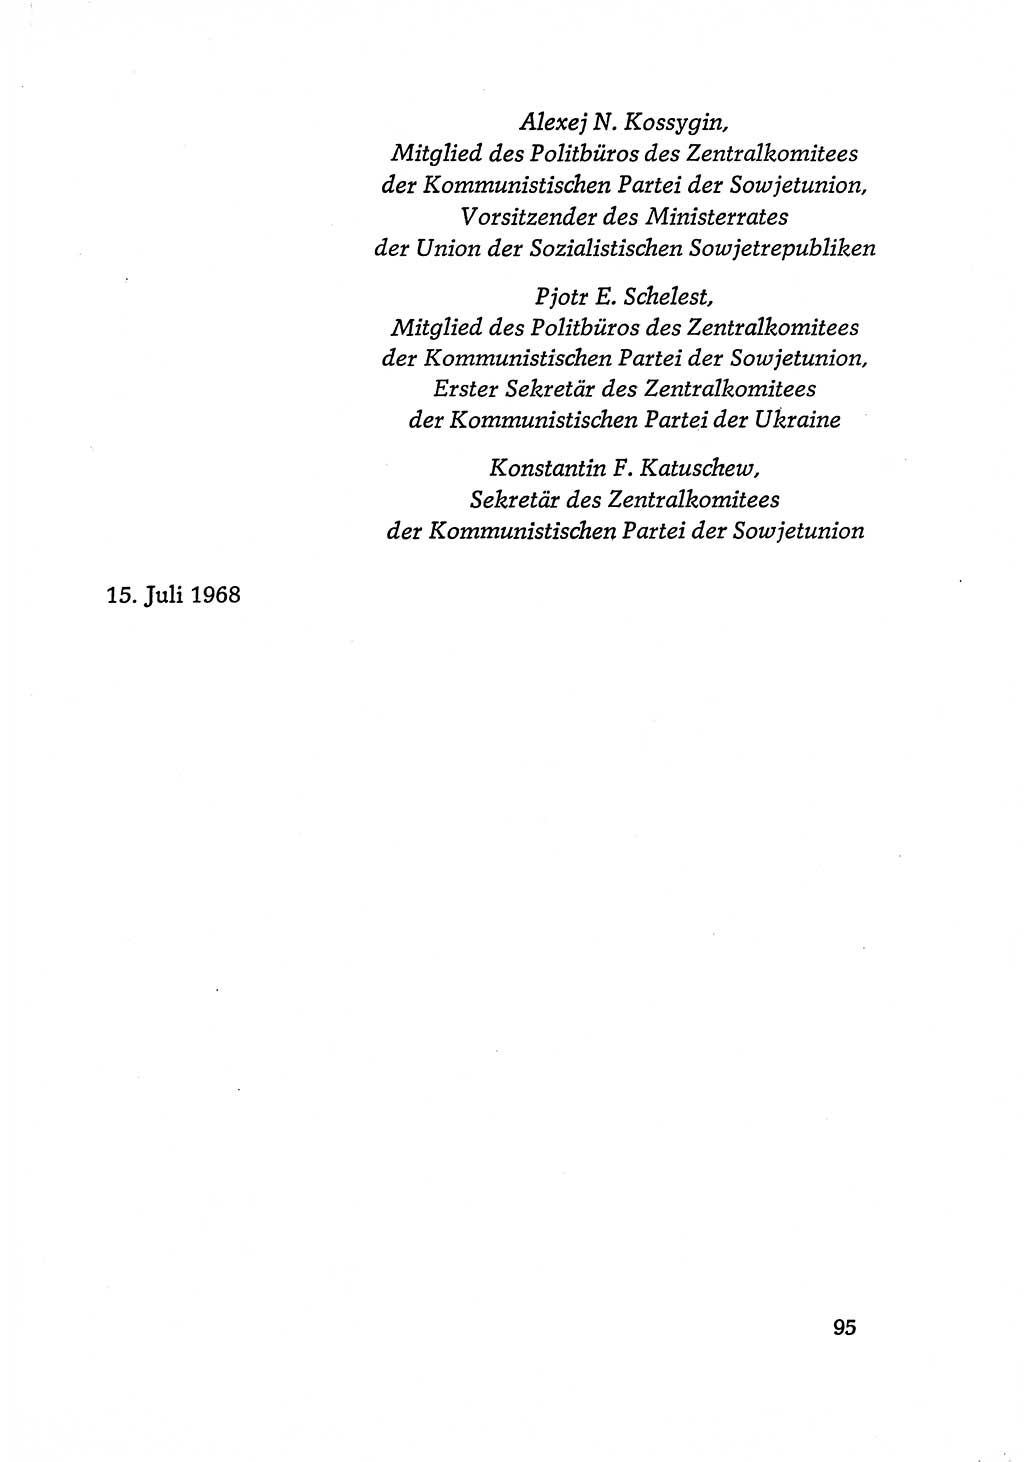 Dokumente der Sozialistischen Einheitspartei Deutschlands (SED) [Deutsche Demokratische Republik (DDR)] 1968-1969, Seite 95 (Dok. SED DDR 1968-1969, S. 95)